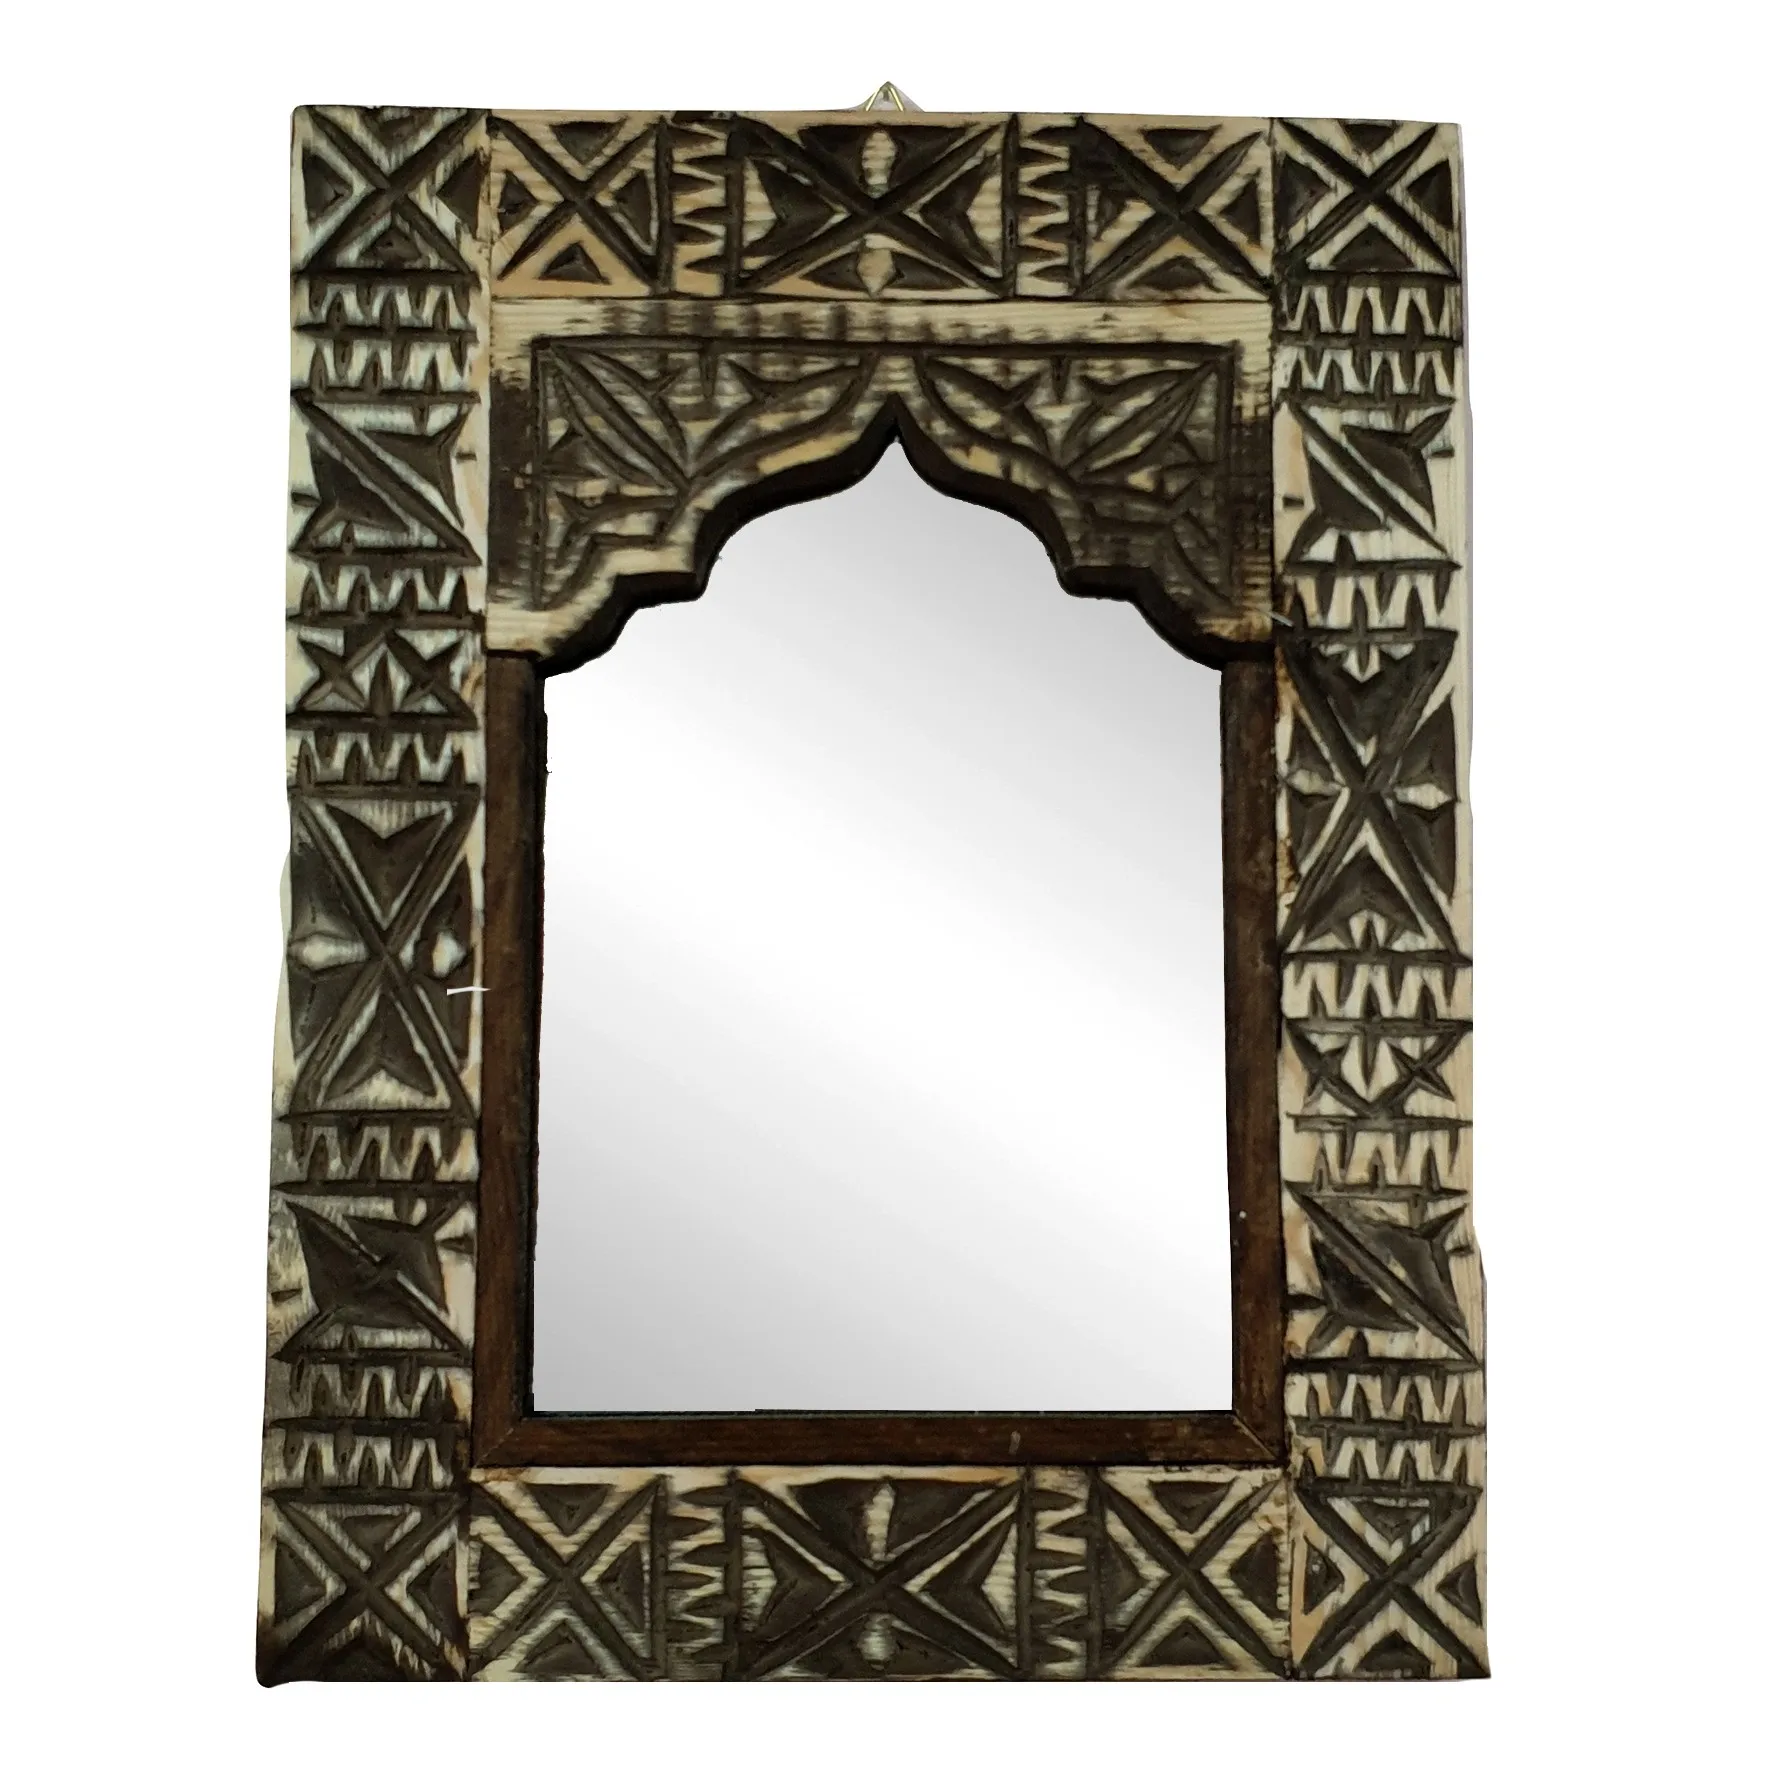 Рамка для мозаики купить. Арабки мозаика рамка. Зеркало рамка глина с глазами. Рамки для 5 фото Восточная арабская. Рамки для фото Восточная арабская ,f,eh.